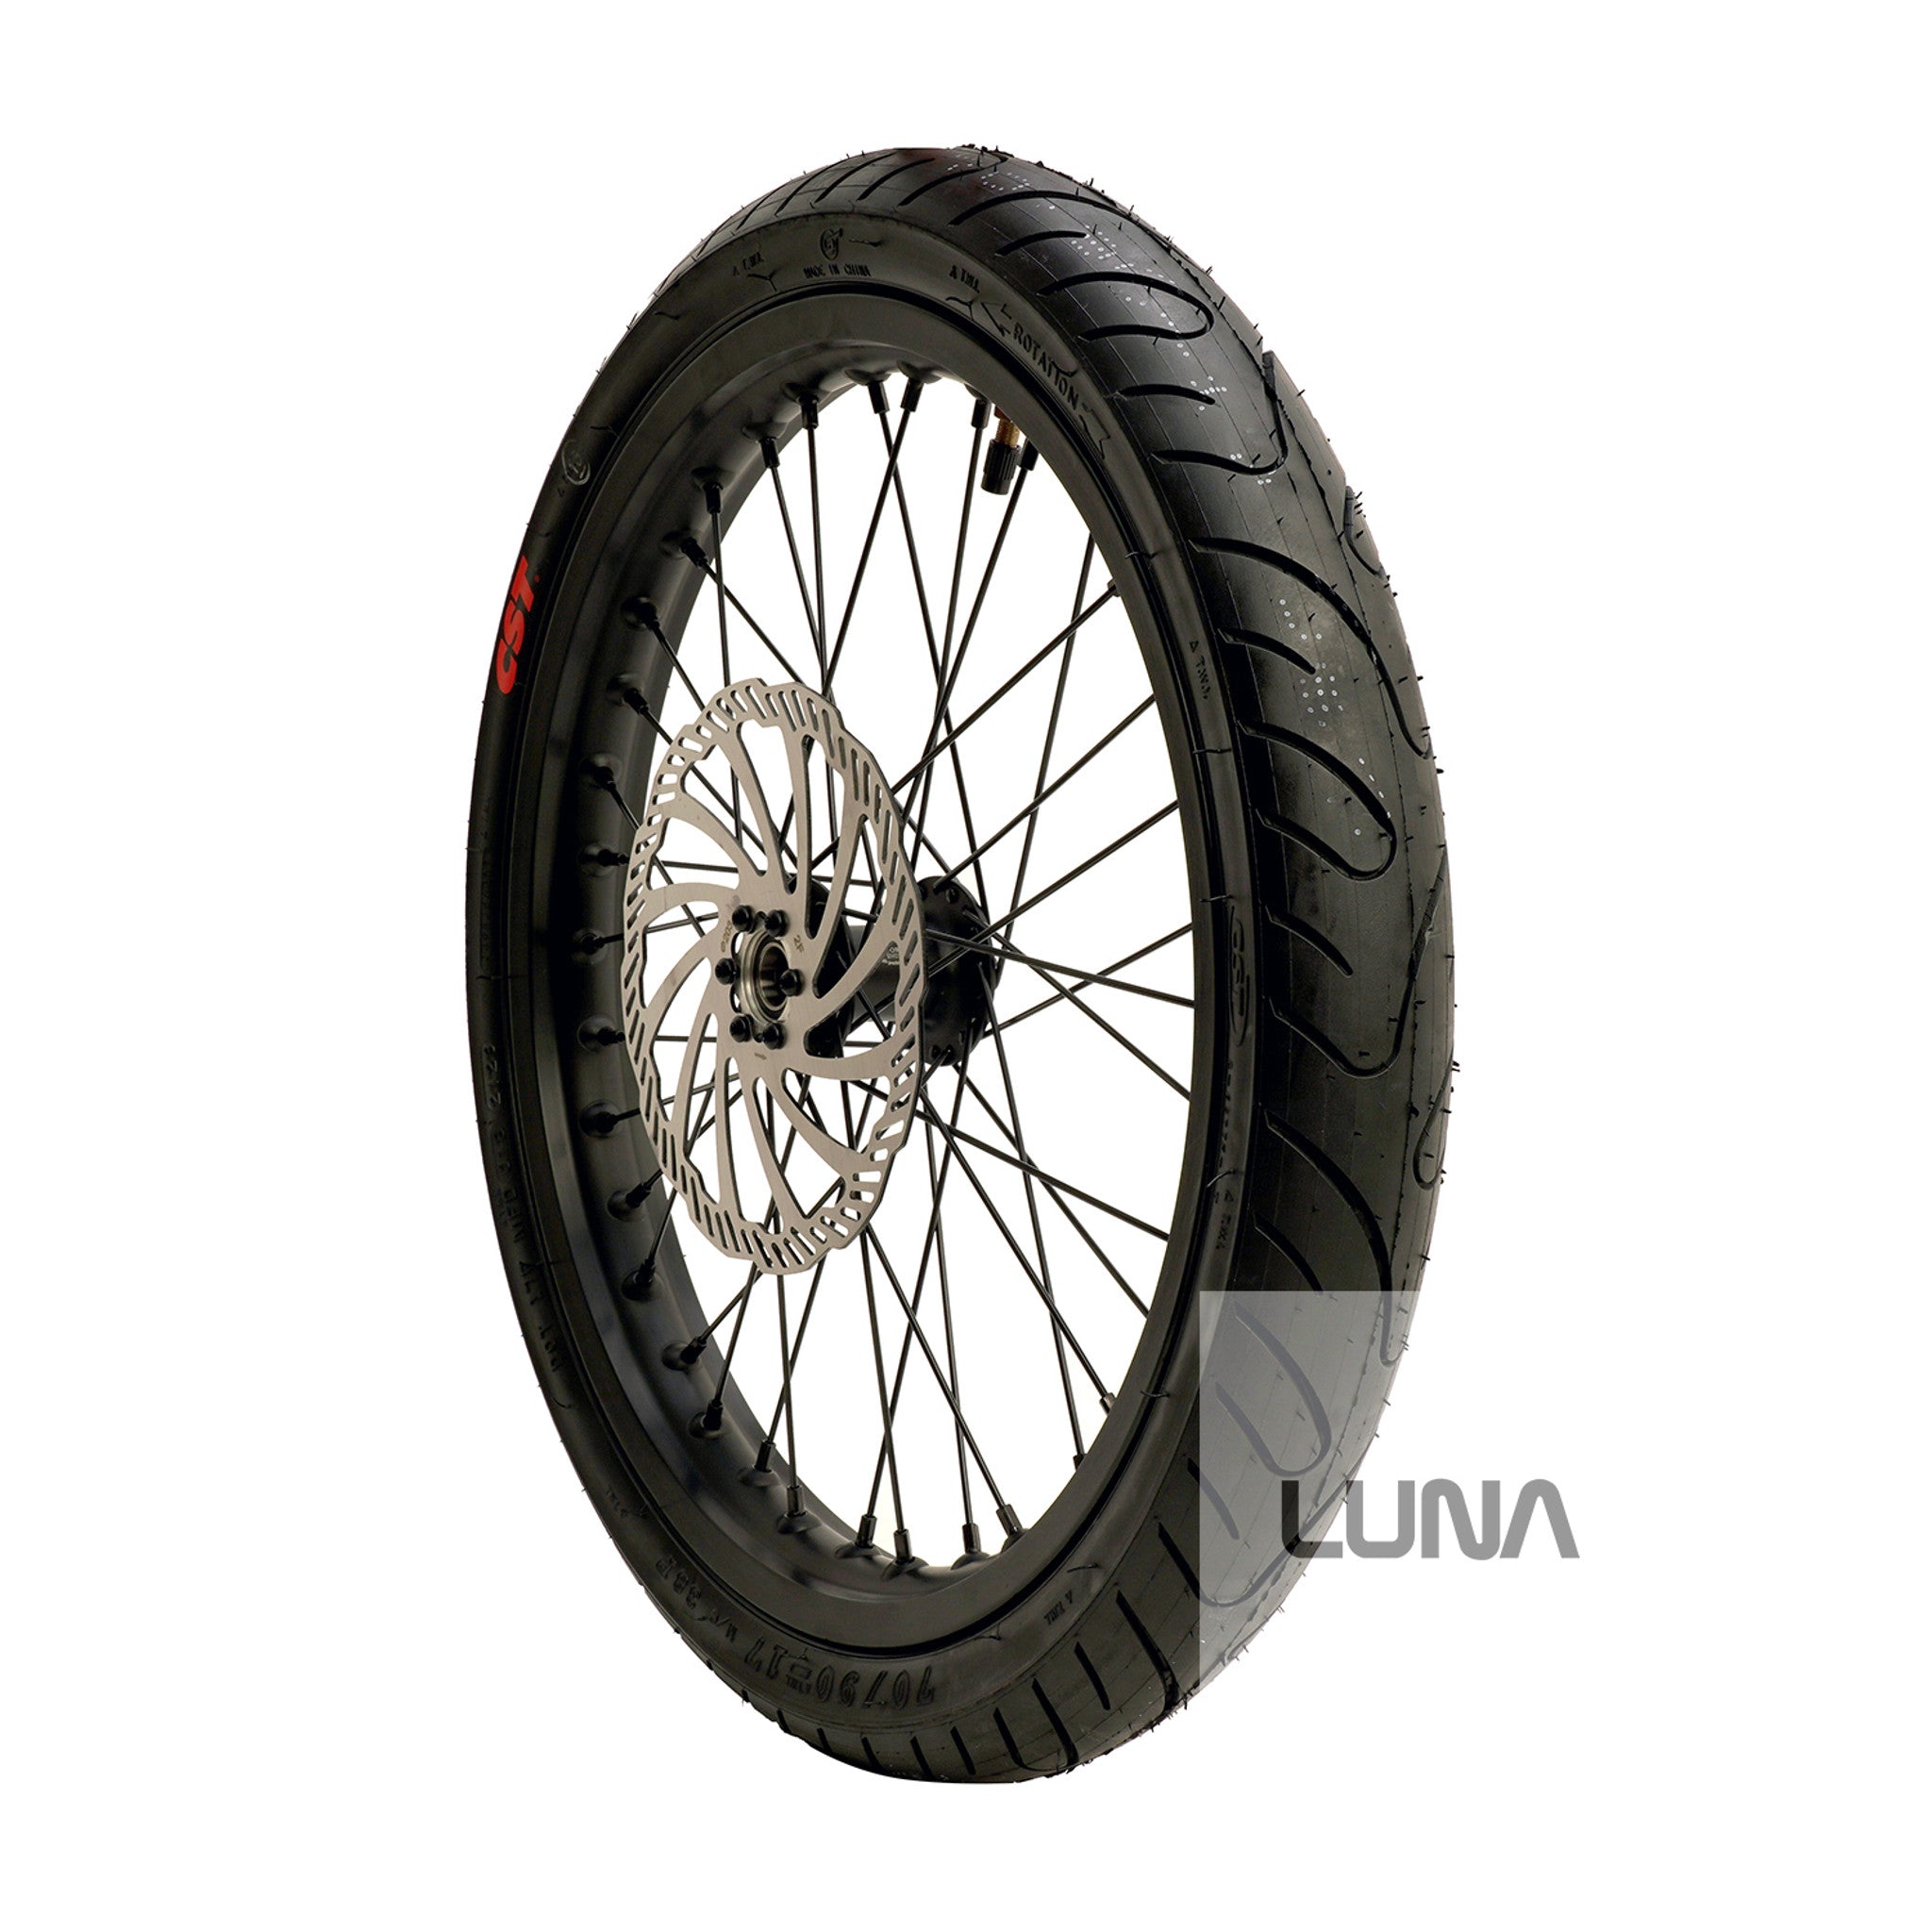 17in Super Moto Wheel set for Surron/ E-Ride Pro